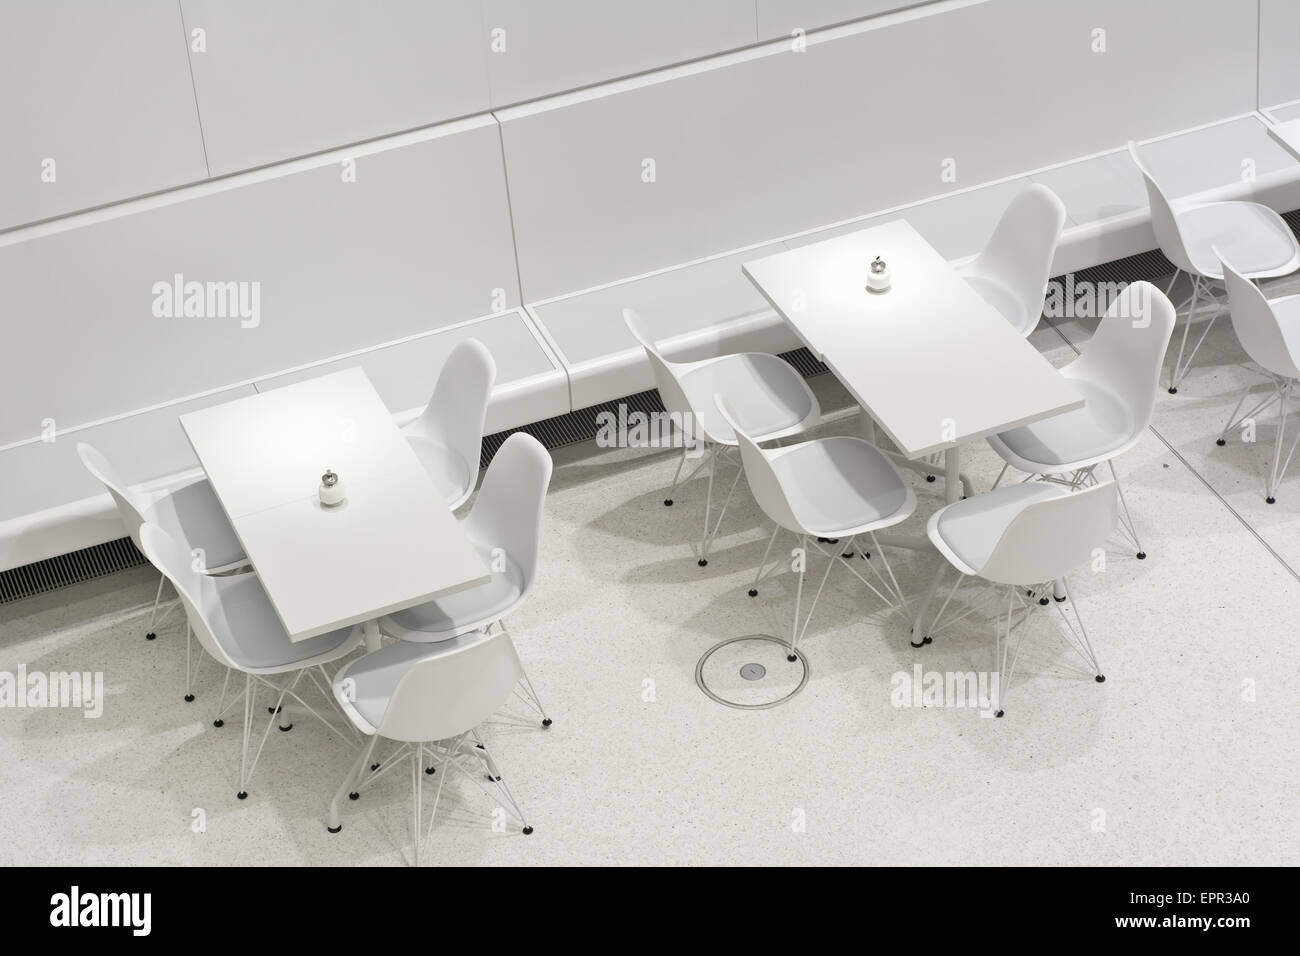 L'intérieur blanc vide tables de restaurant dans un style architectural moderne de l'Europe Banque D'Images